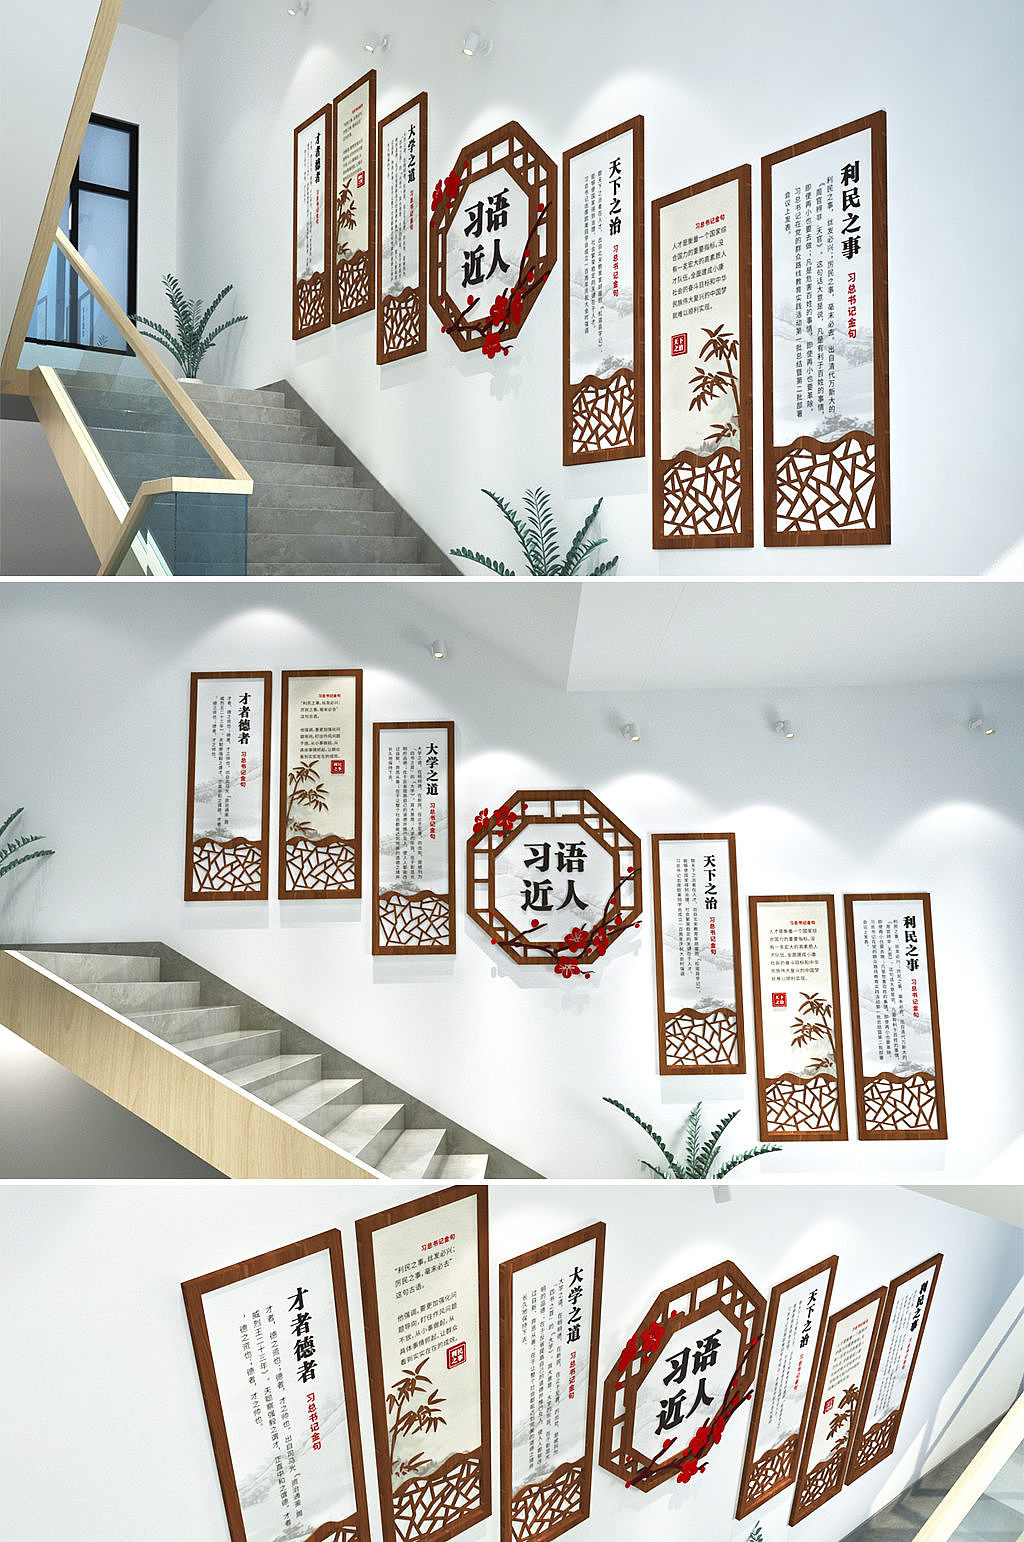 混搭时尚楼梯照片墙设计图图片_装饰装修_建筑空间-图行天下素材网